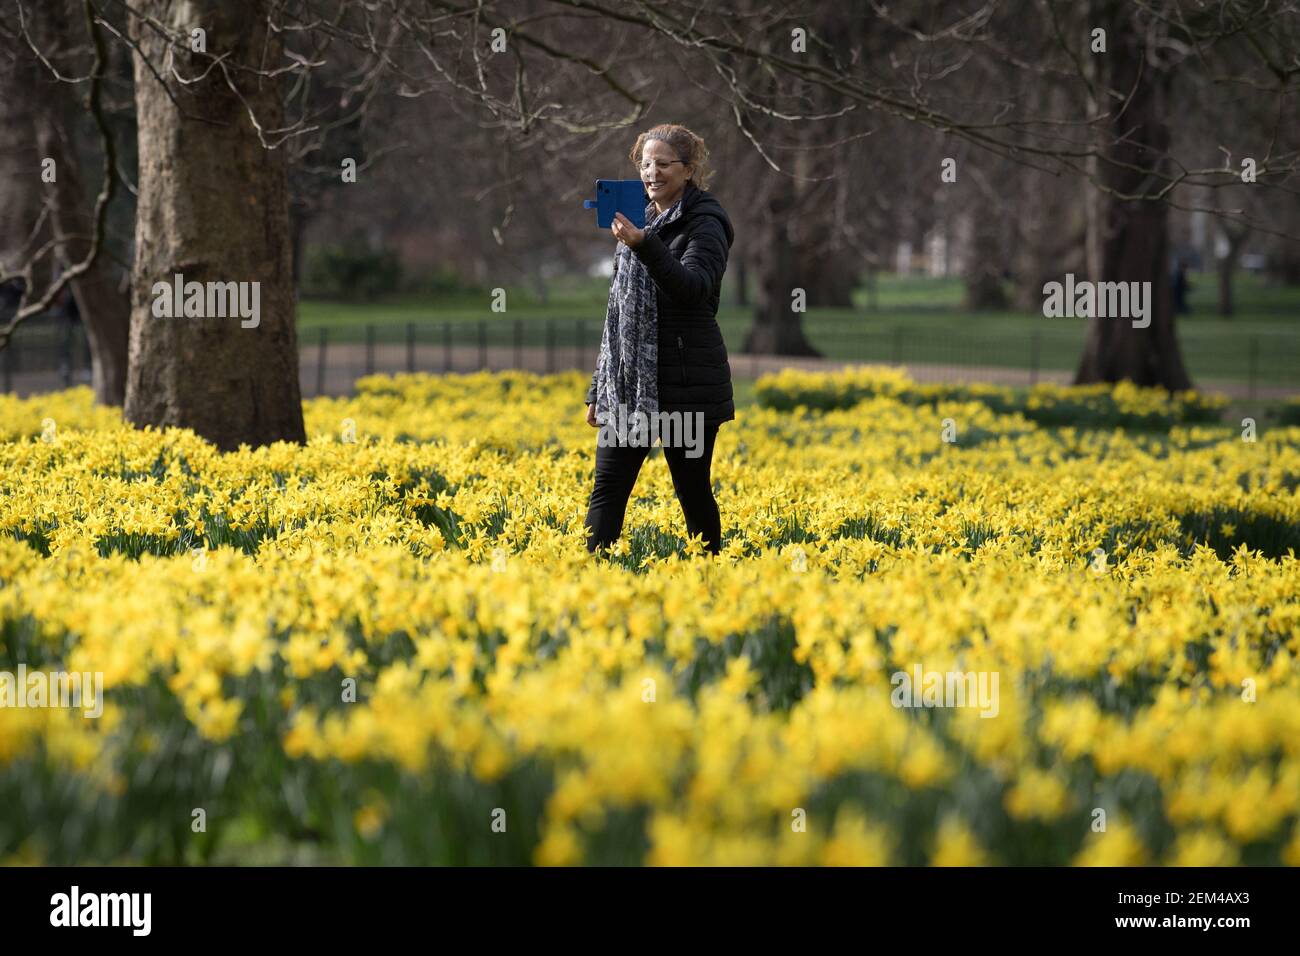 Eine Dame fotografiert Narzissen im St James's Park, London, und Prognostiker sagen voraus, dass "die ersten Zeichen des Frühlings" in den kommenden Tagen in vielen Teilen Großbritanniens spürbar sein werden. Bilddatum: Mittwoch, 24. Februar 2021. Stockfoto